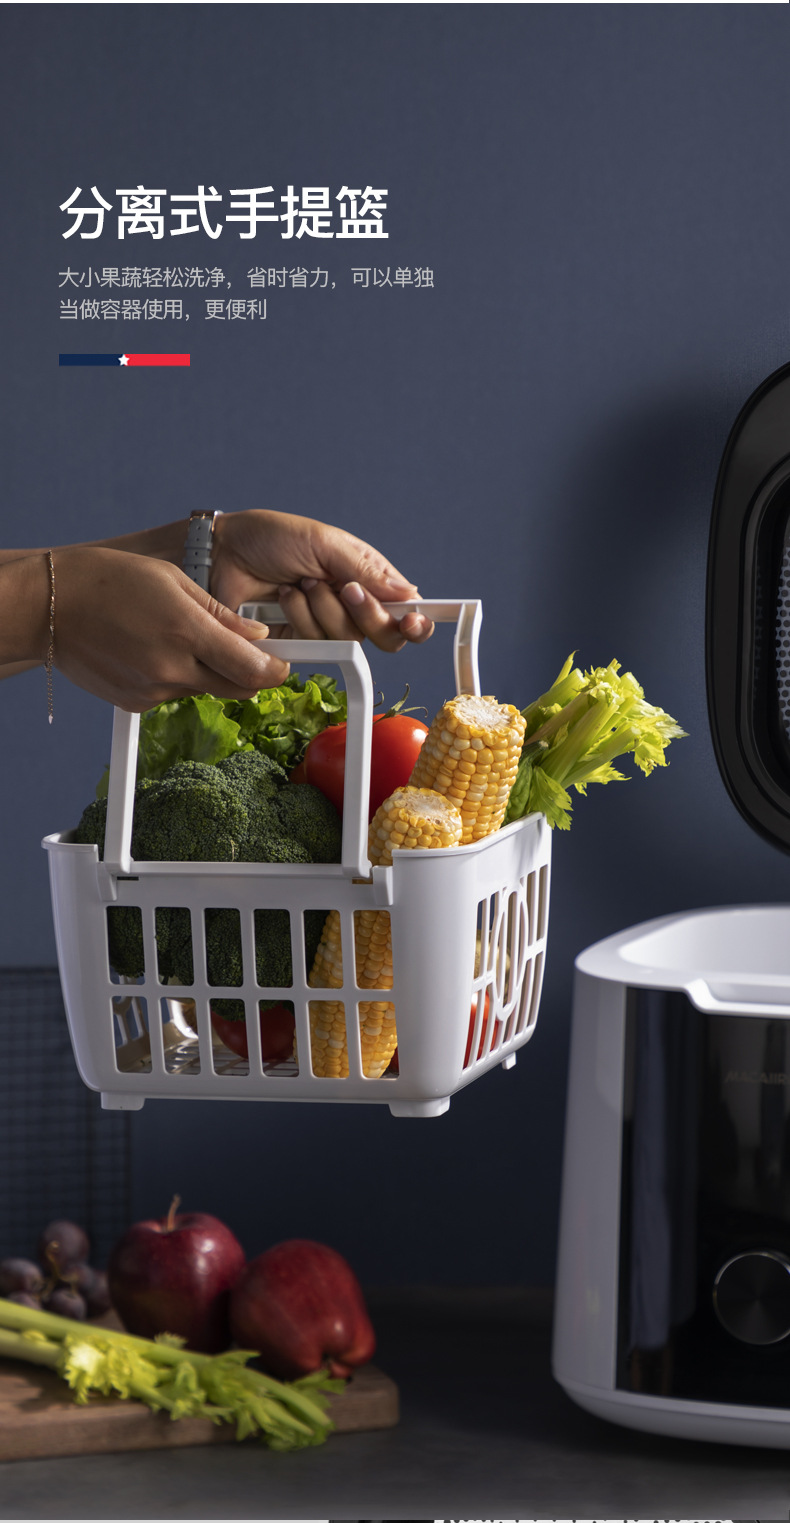 美国迈卡罗MC-4062食材净化机洗菜机家用超声波消毒机果蔬清洗机